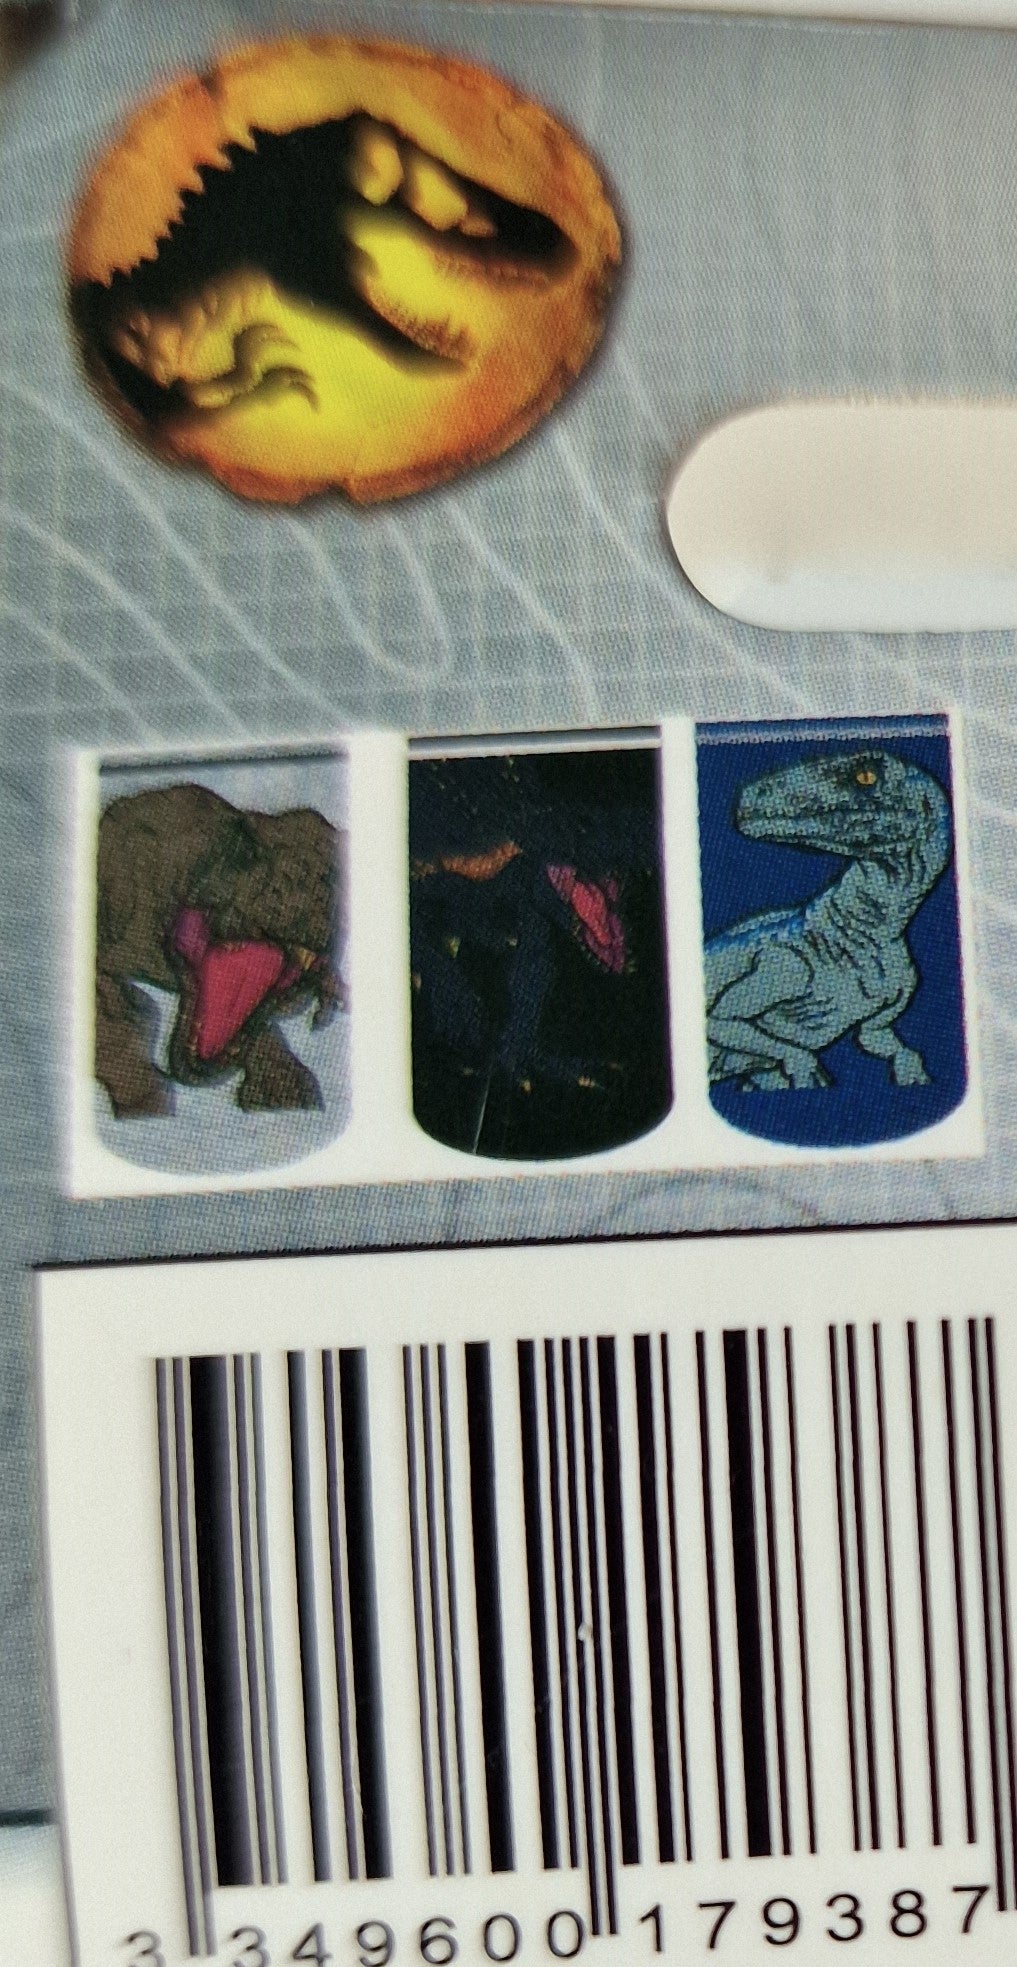 Jurassic World Dinosaurier Sneaker Socken 3er Set Dinos